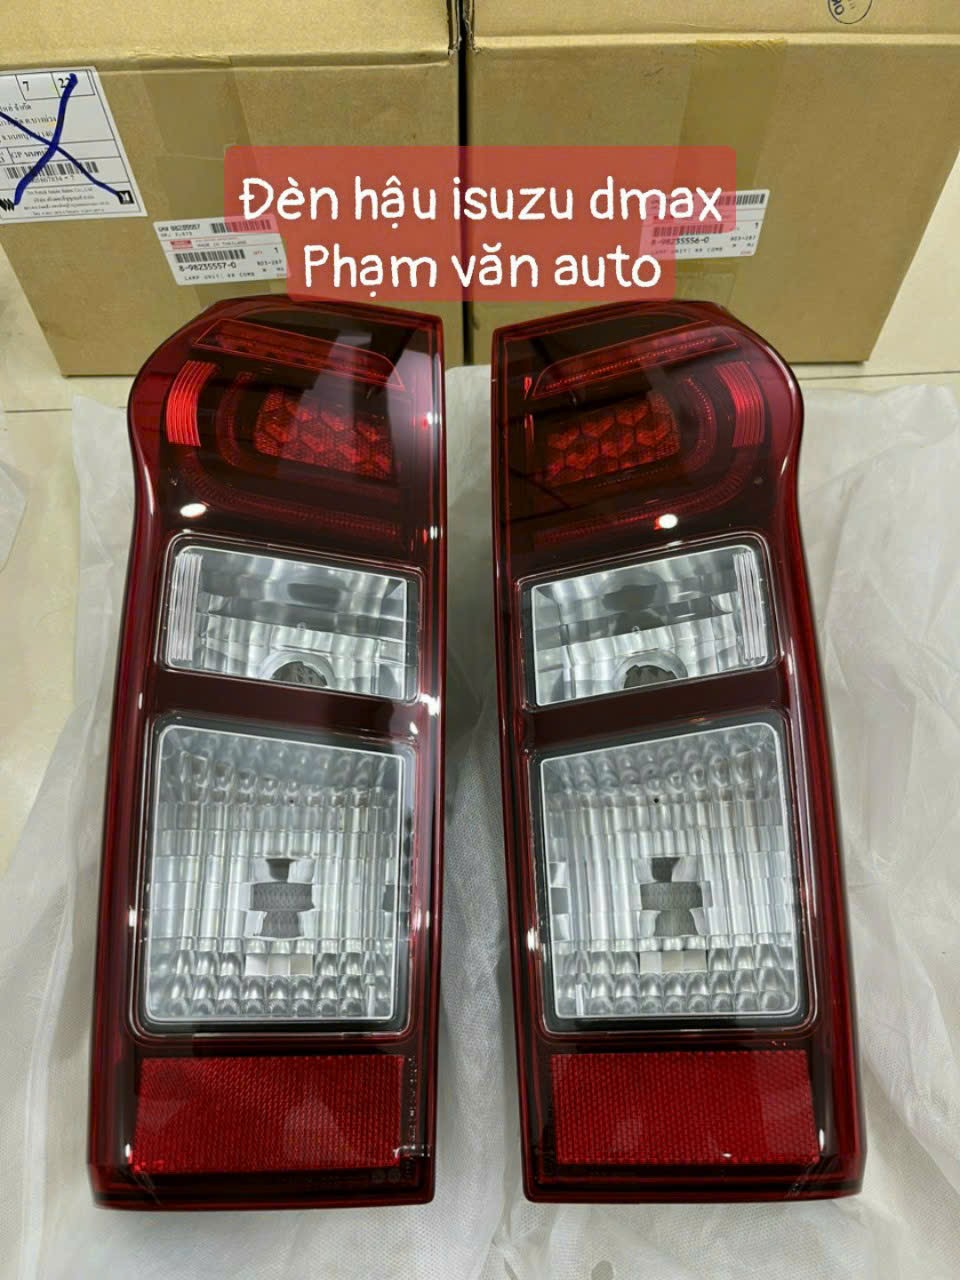 Đèn hậu Isuzu Dmax chính hãng giá rẻ Phạm văn auto